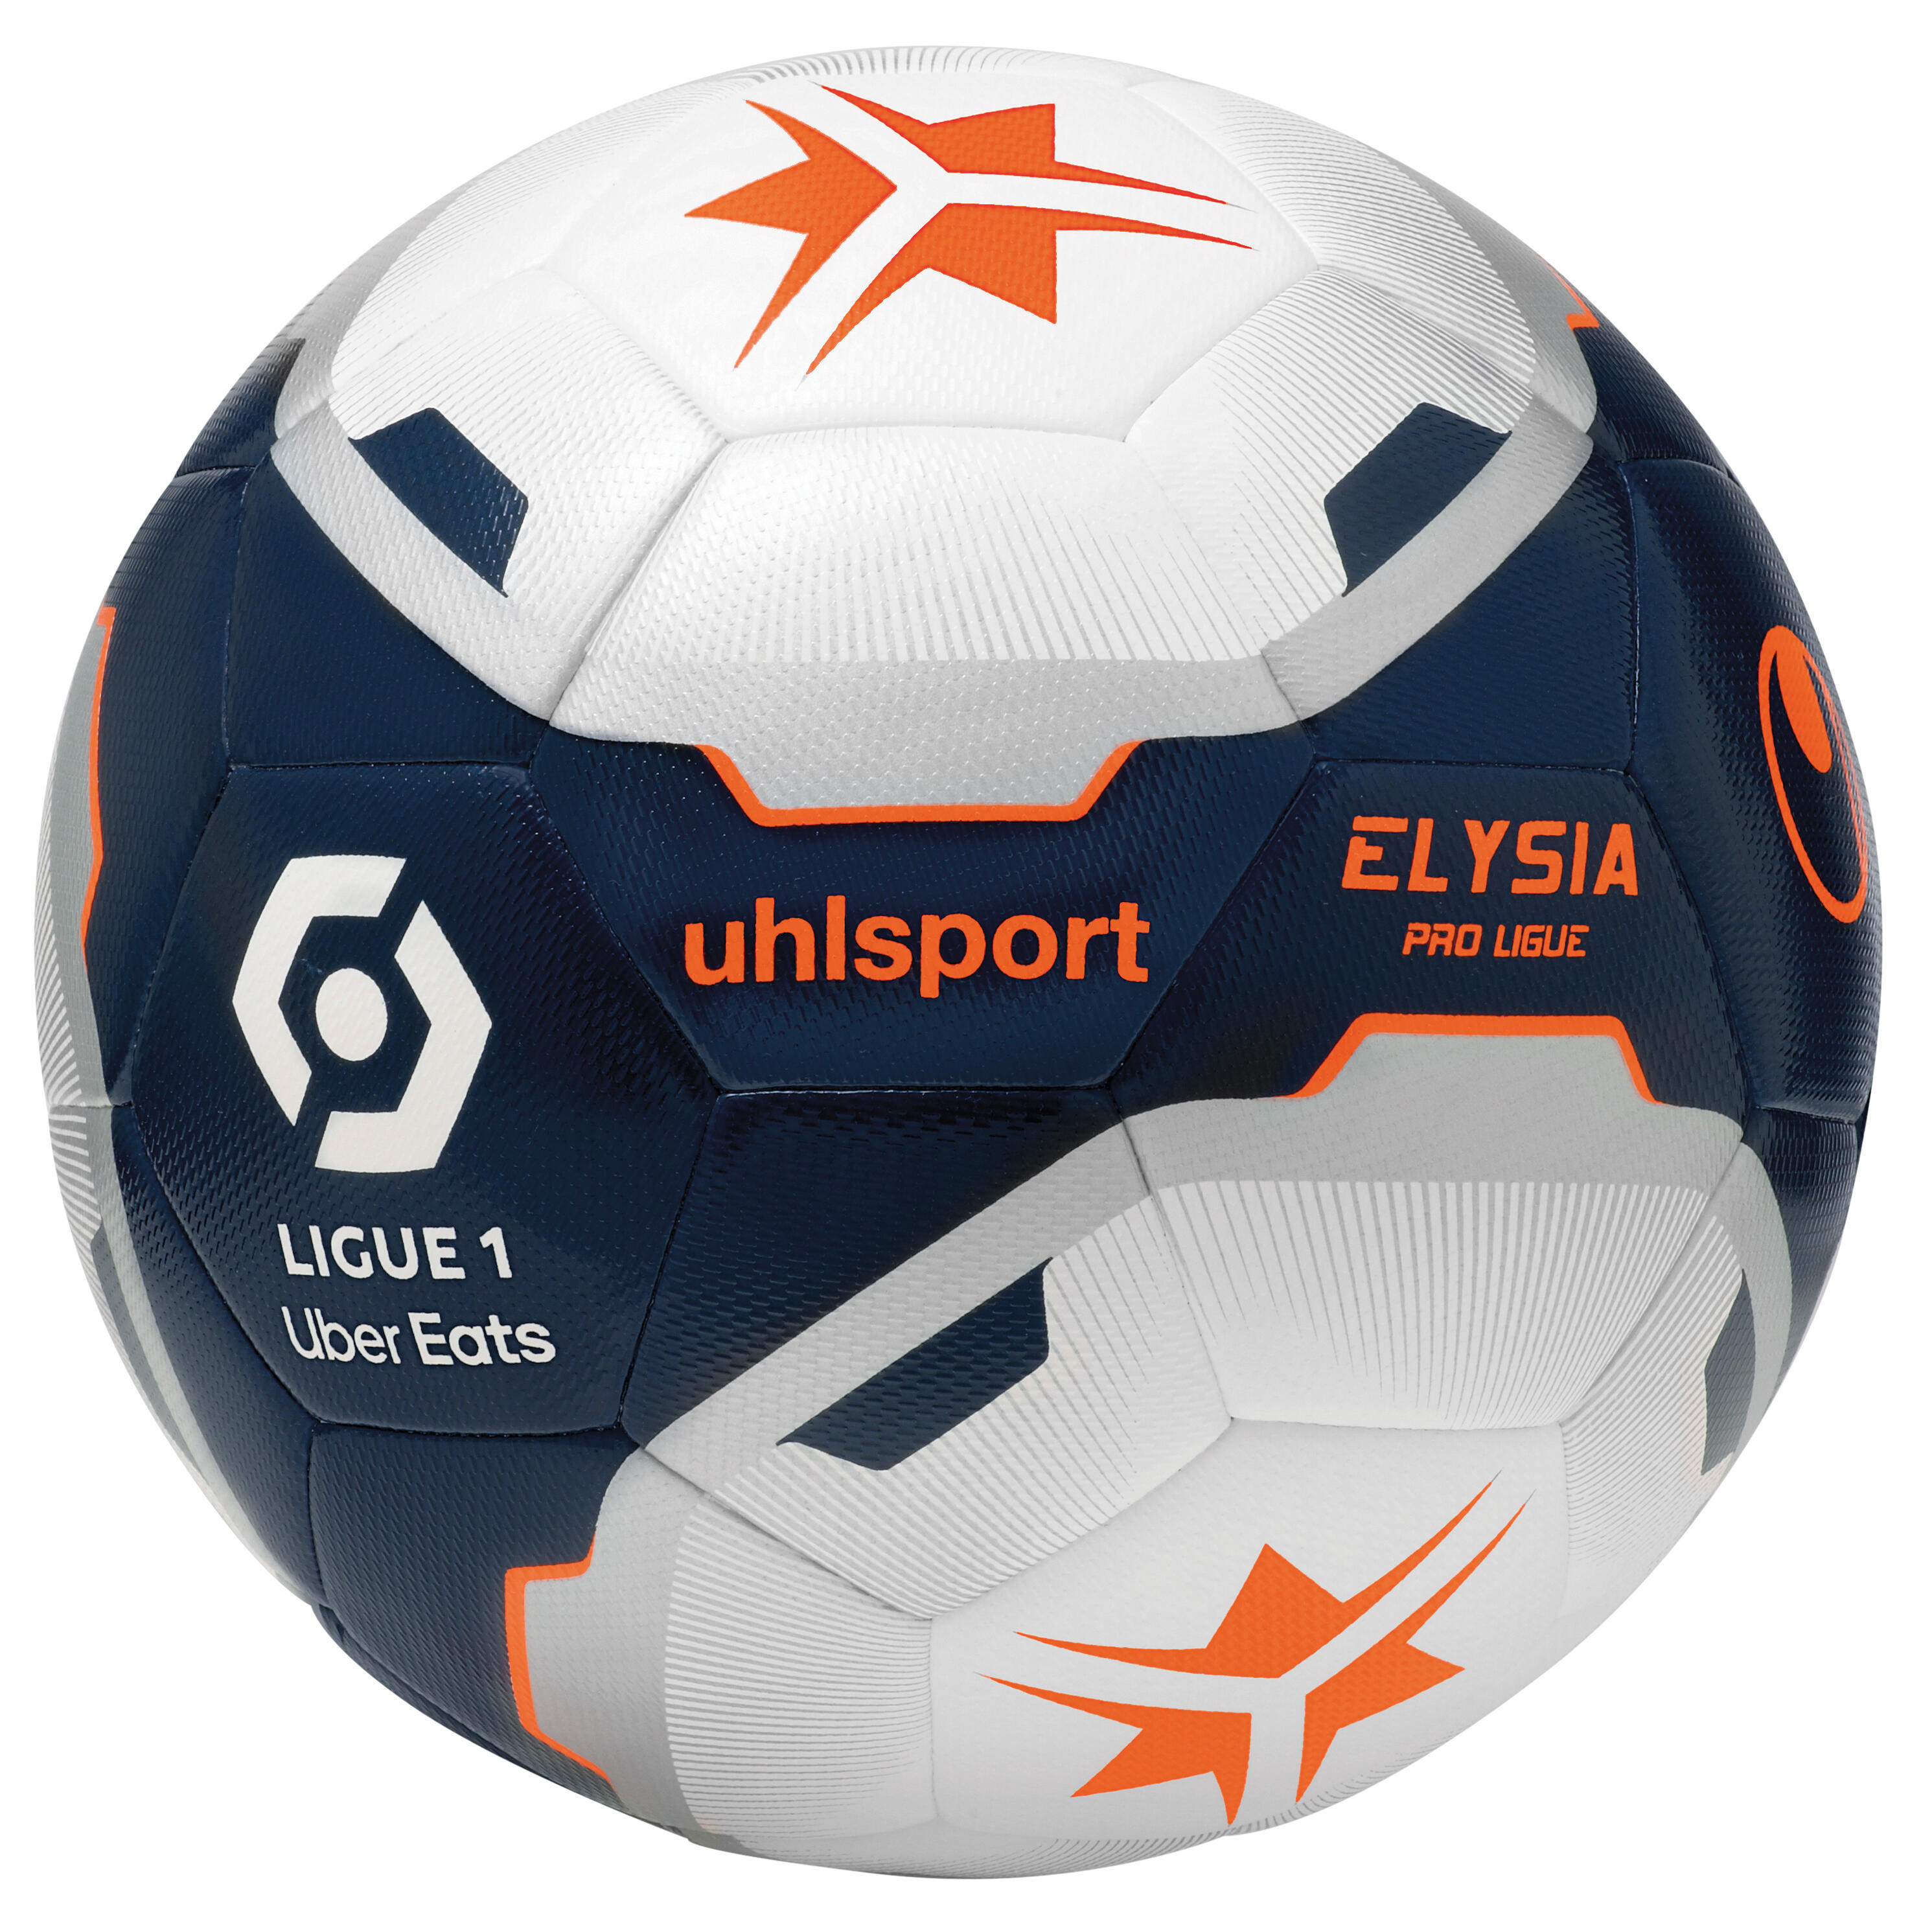 Football Ball Uhlsport Elysia ProLigue Ligue 1 1/3